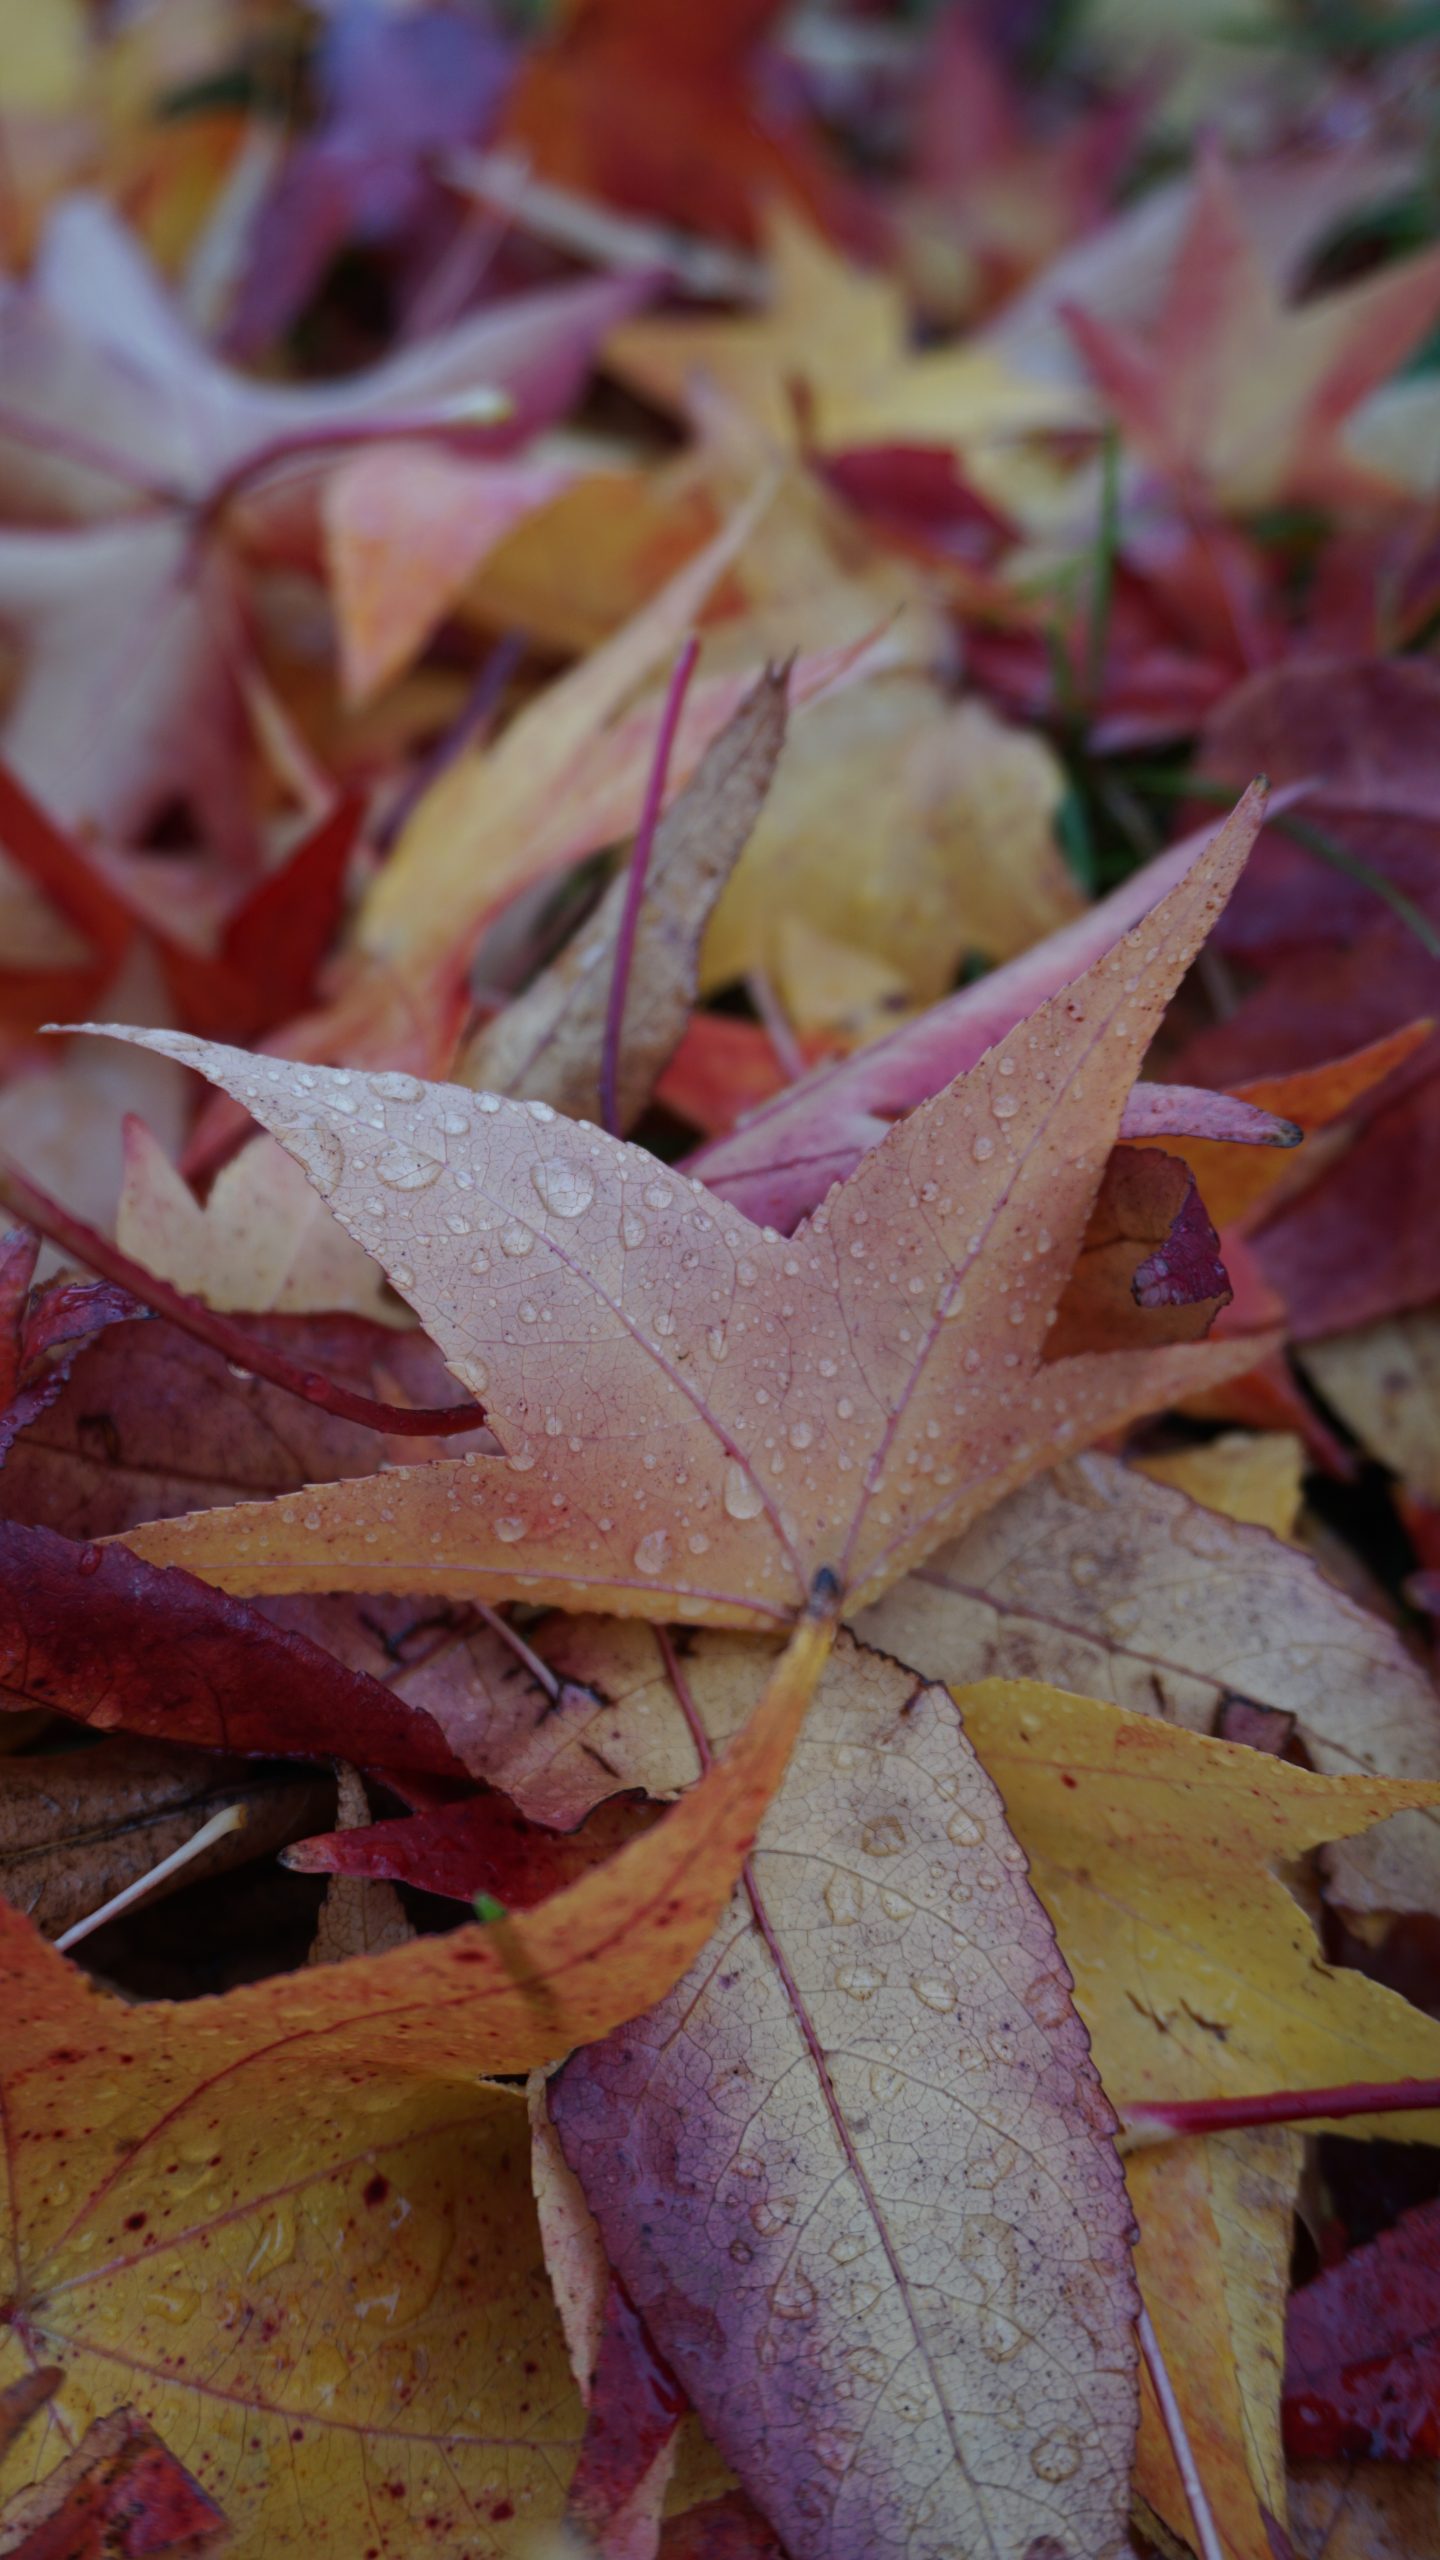 Le foglie - diverse stagioni - diversi colori